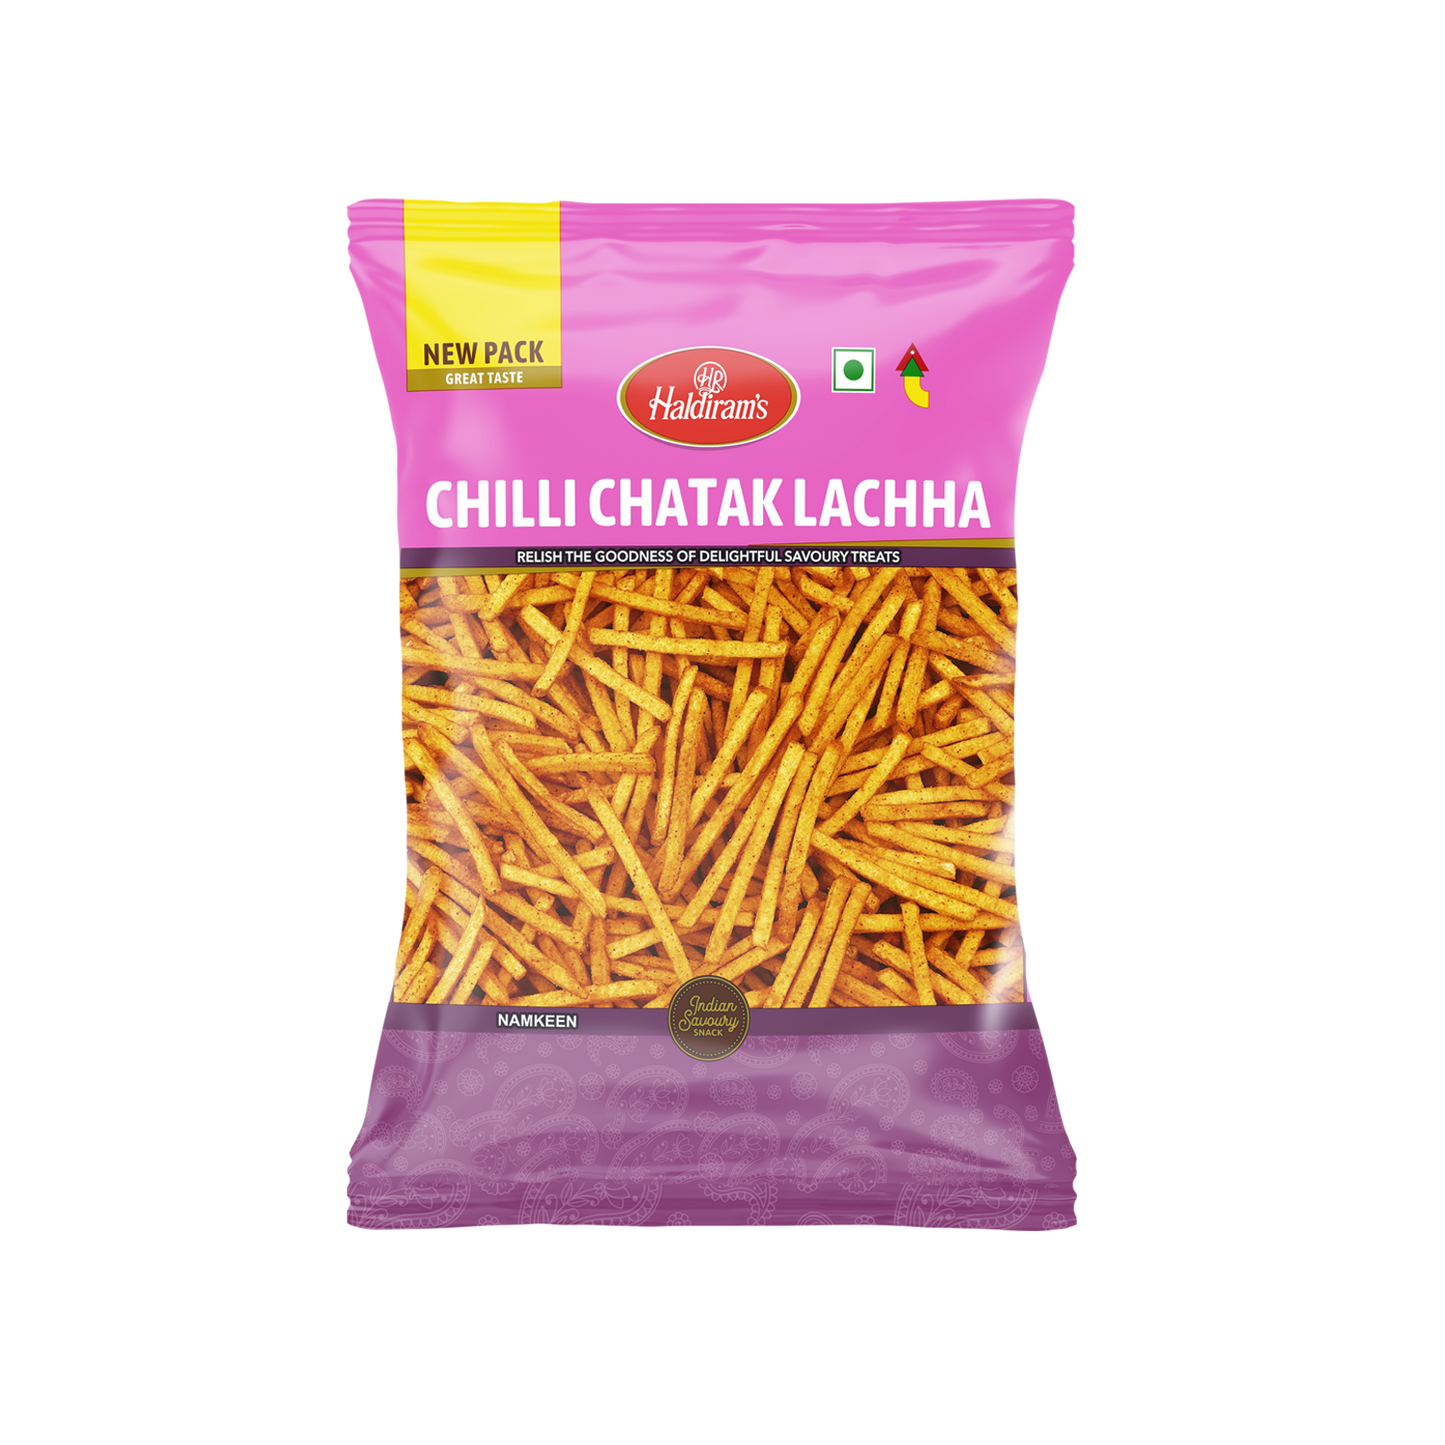 Chilli Chatak Lachha